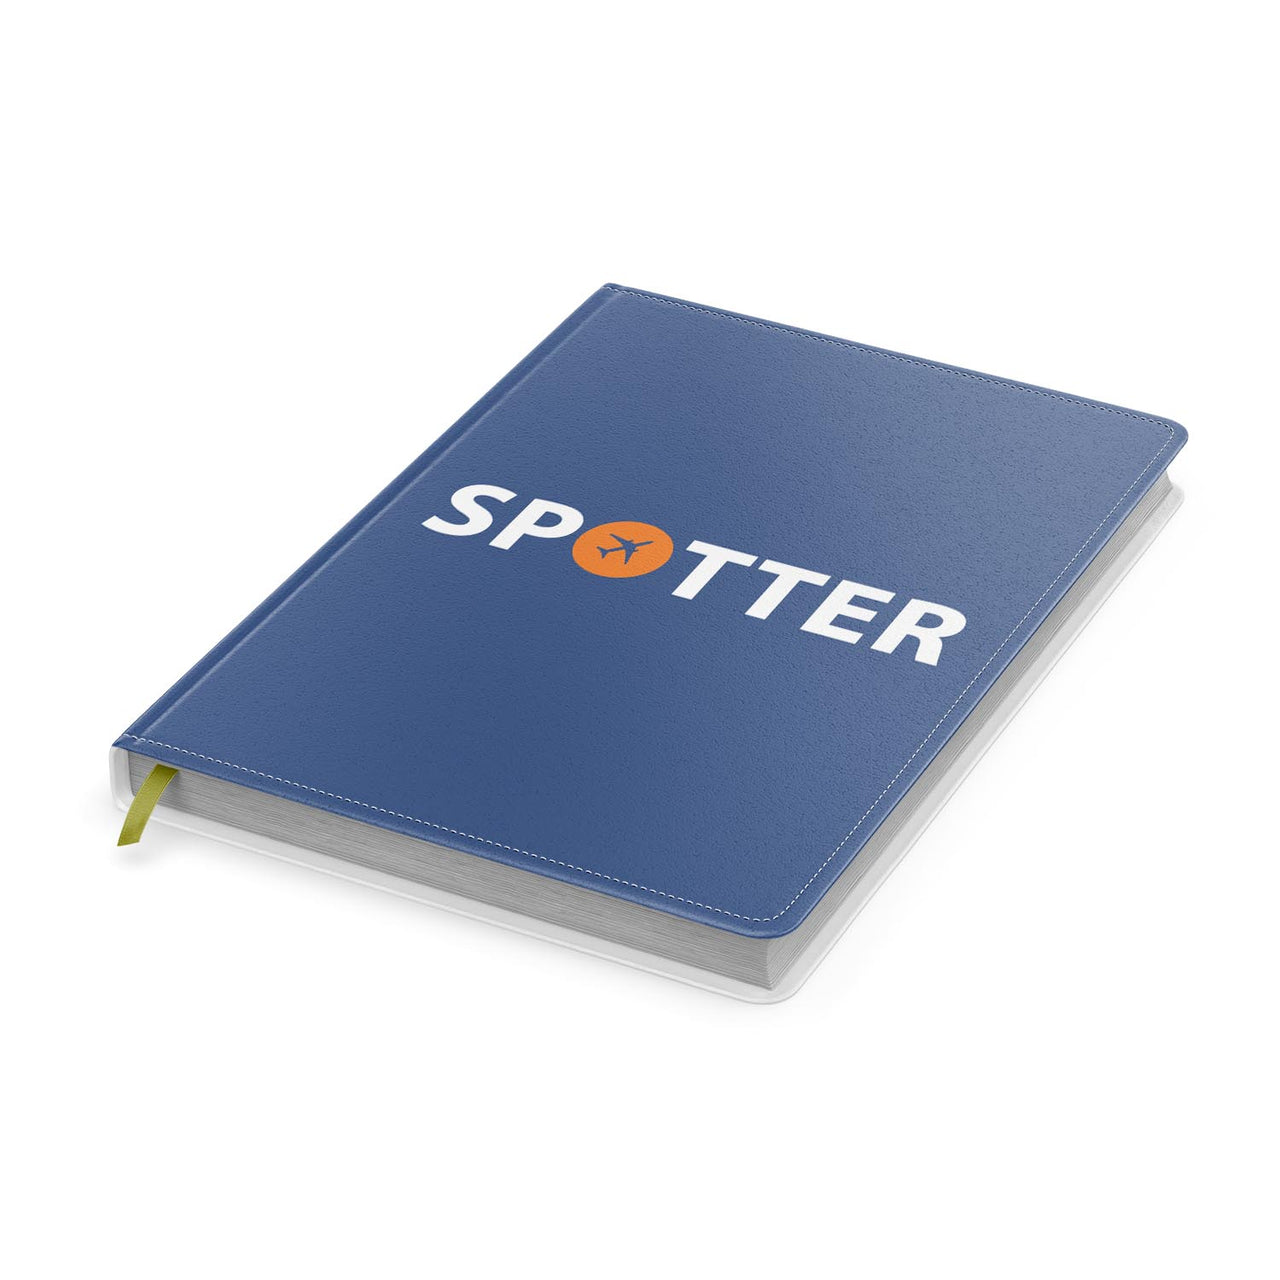 Spotter Designed Notebooks